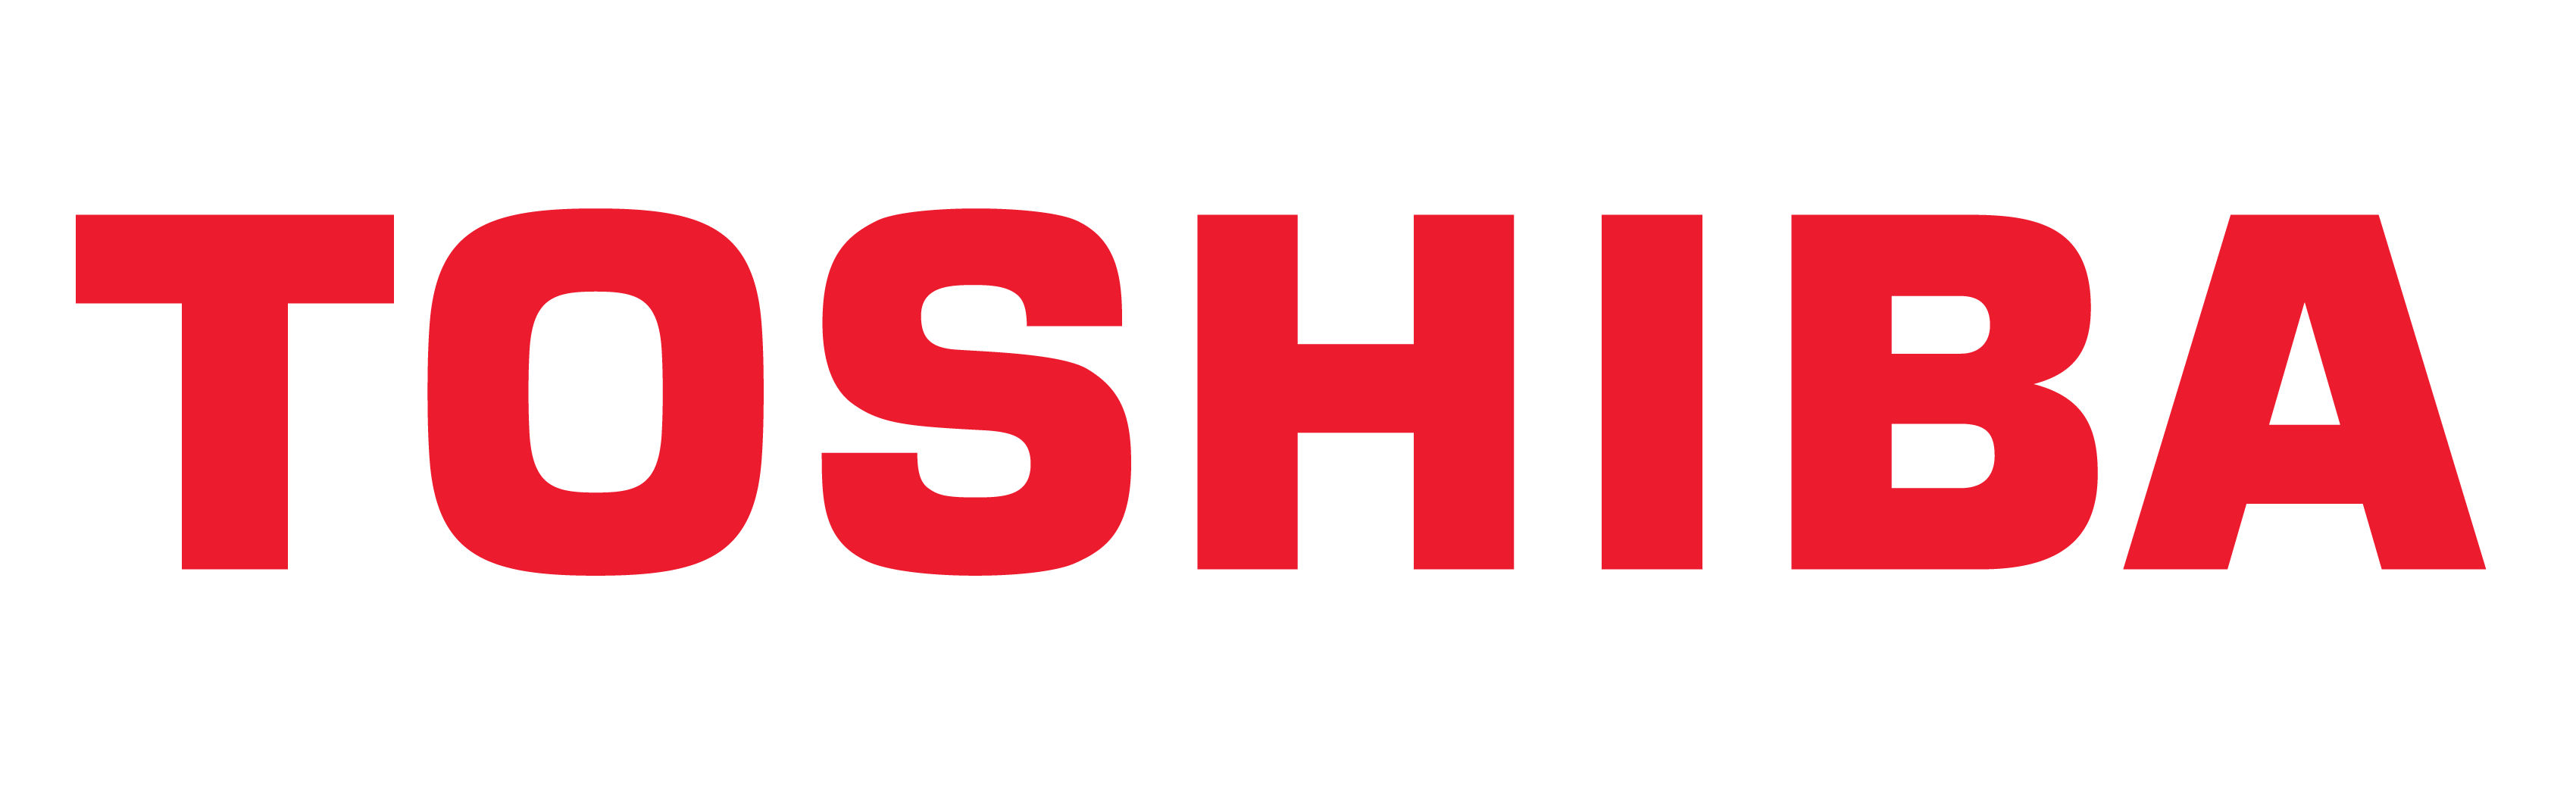 Logo Toshiba, Simbol Toshiba, Arti, Sejarah dan Evolusi